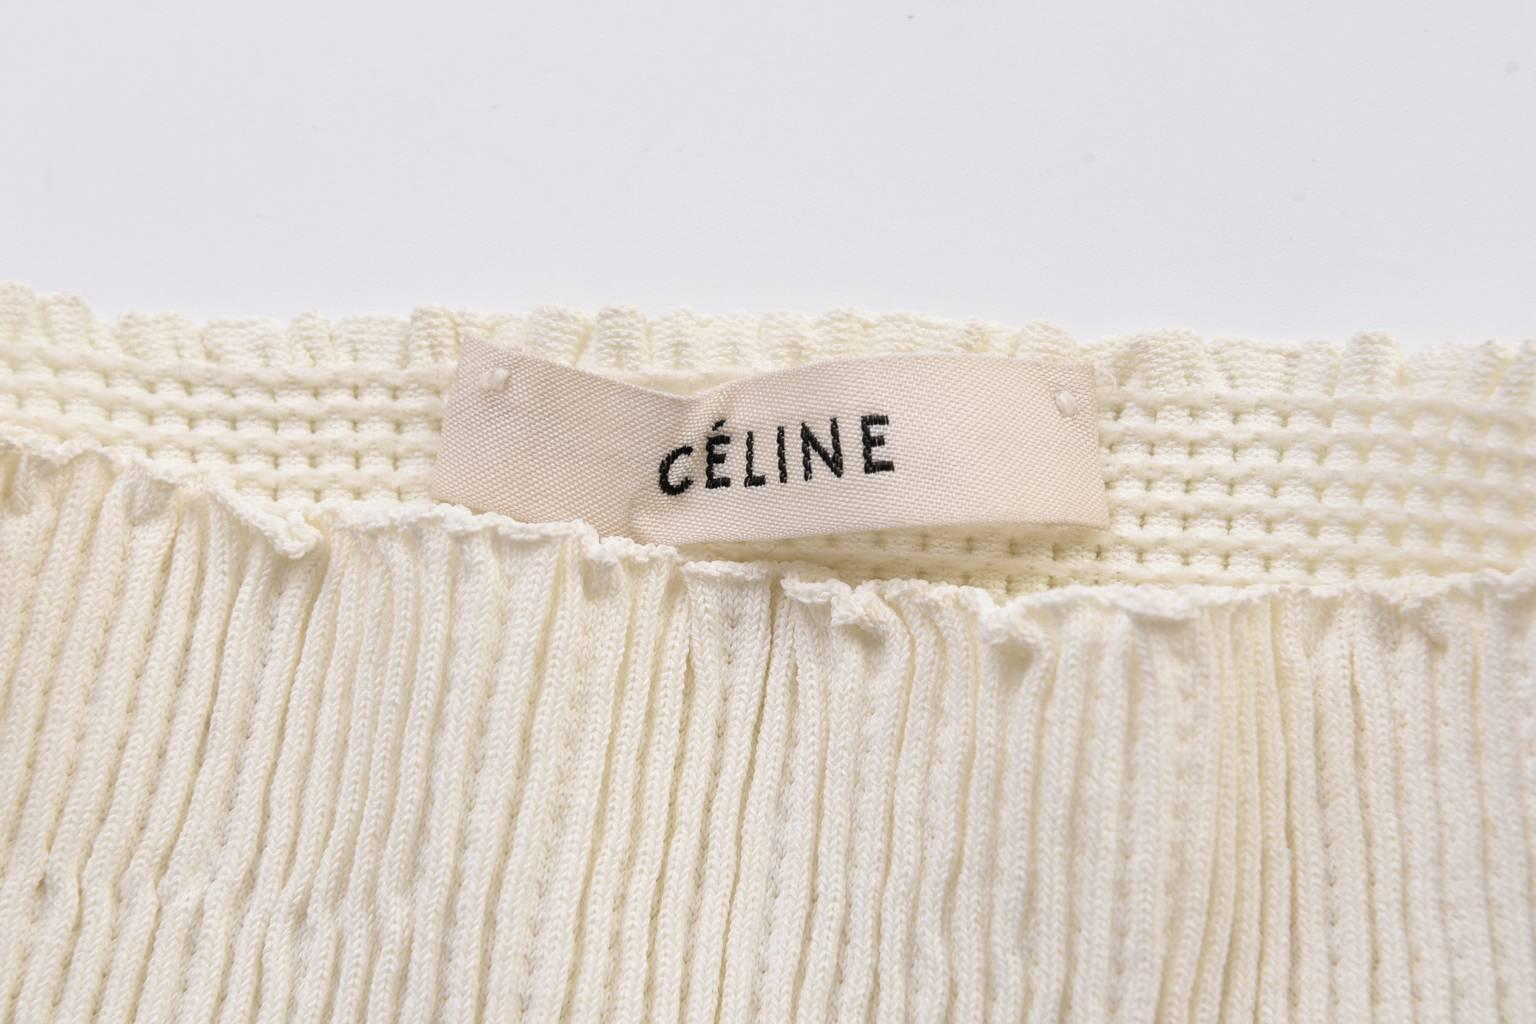 PHOEBE PHILO For CÉLINE Knit Top For Sale 3